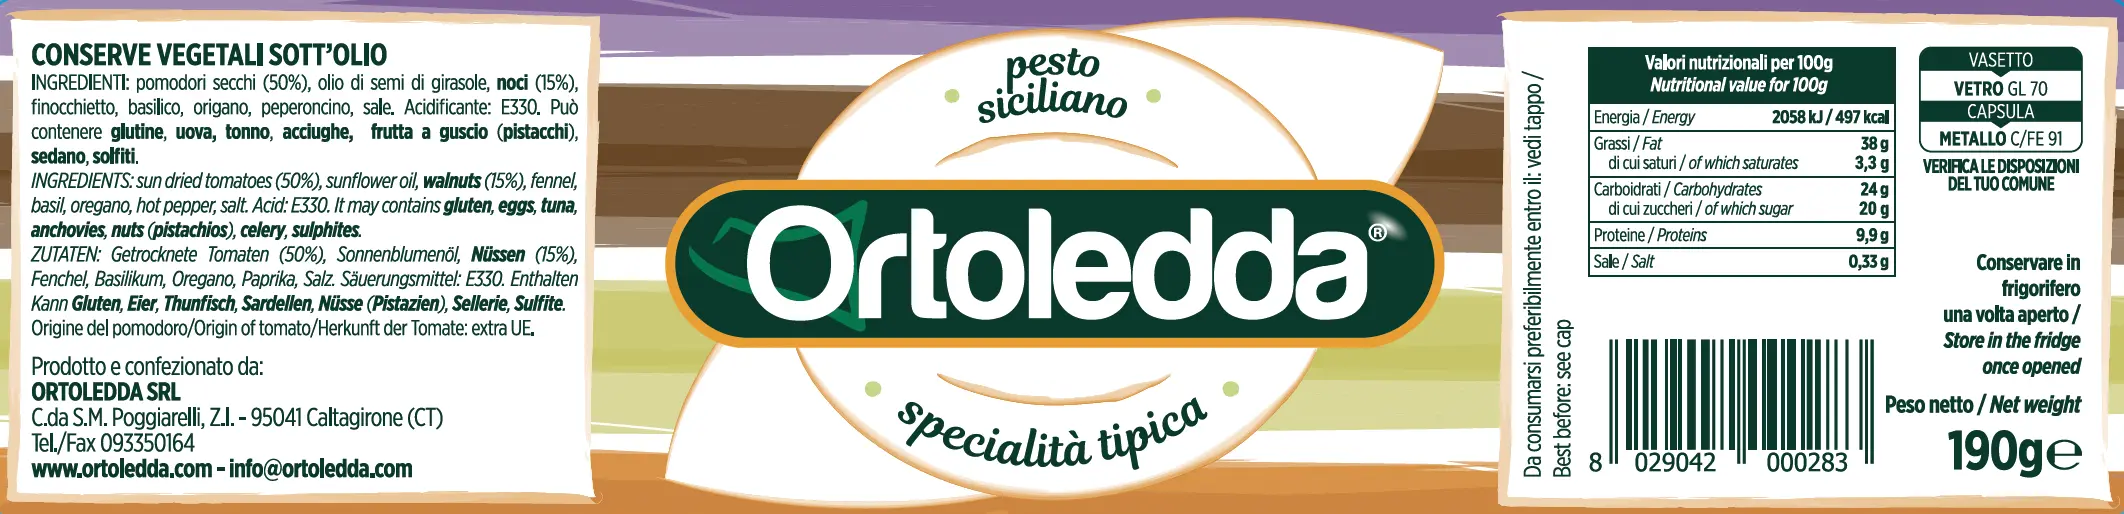 Pesto Siciliano Ortoledda Agrisicilia